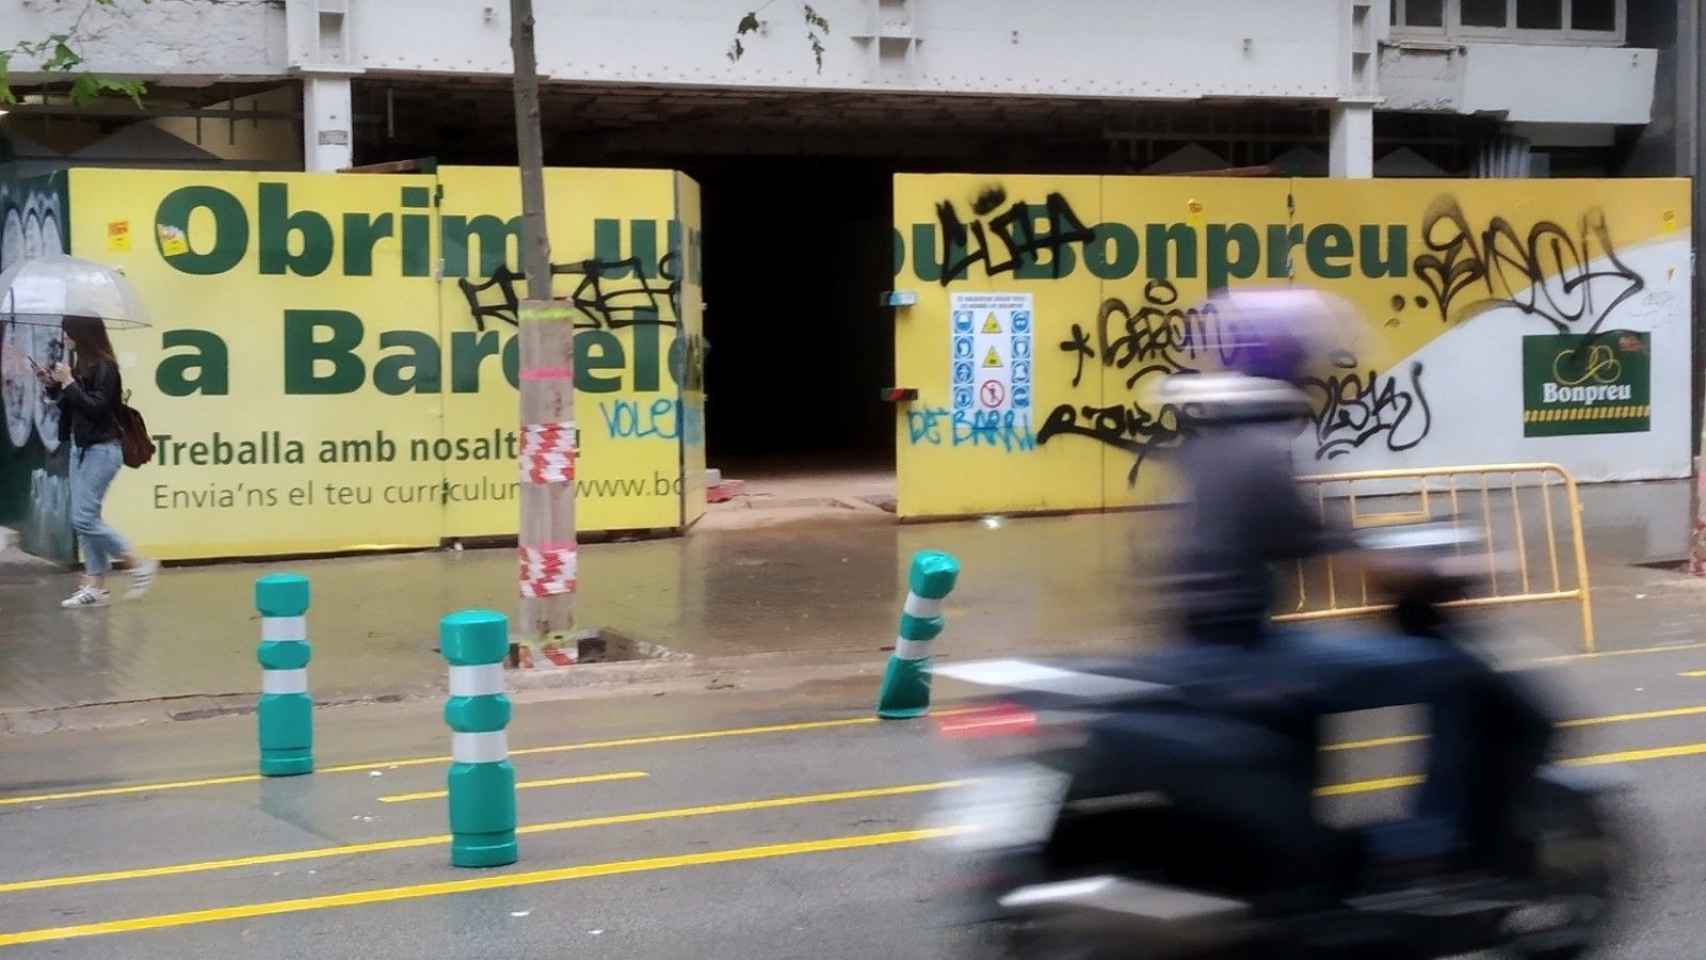 El antiguo cine Urgel con el anuncio de que se construirá un BonPreu / JORDI SUBIRANA